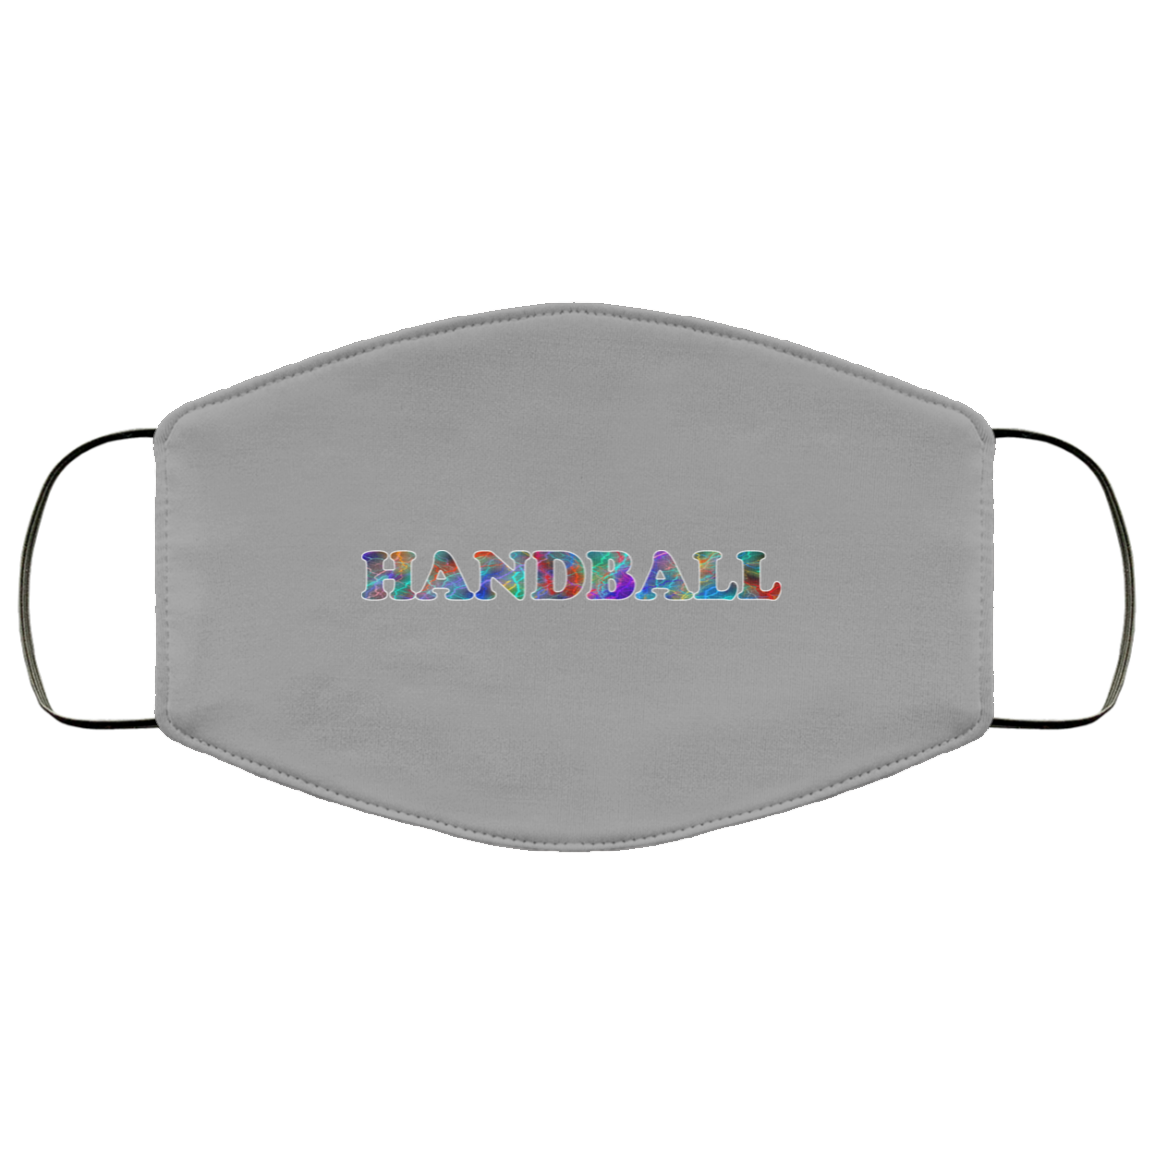 Handball 2 Layer Protective Mask